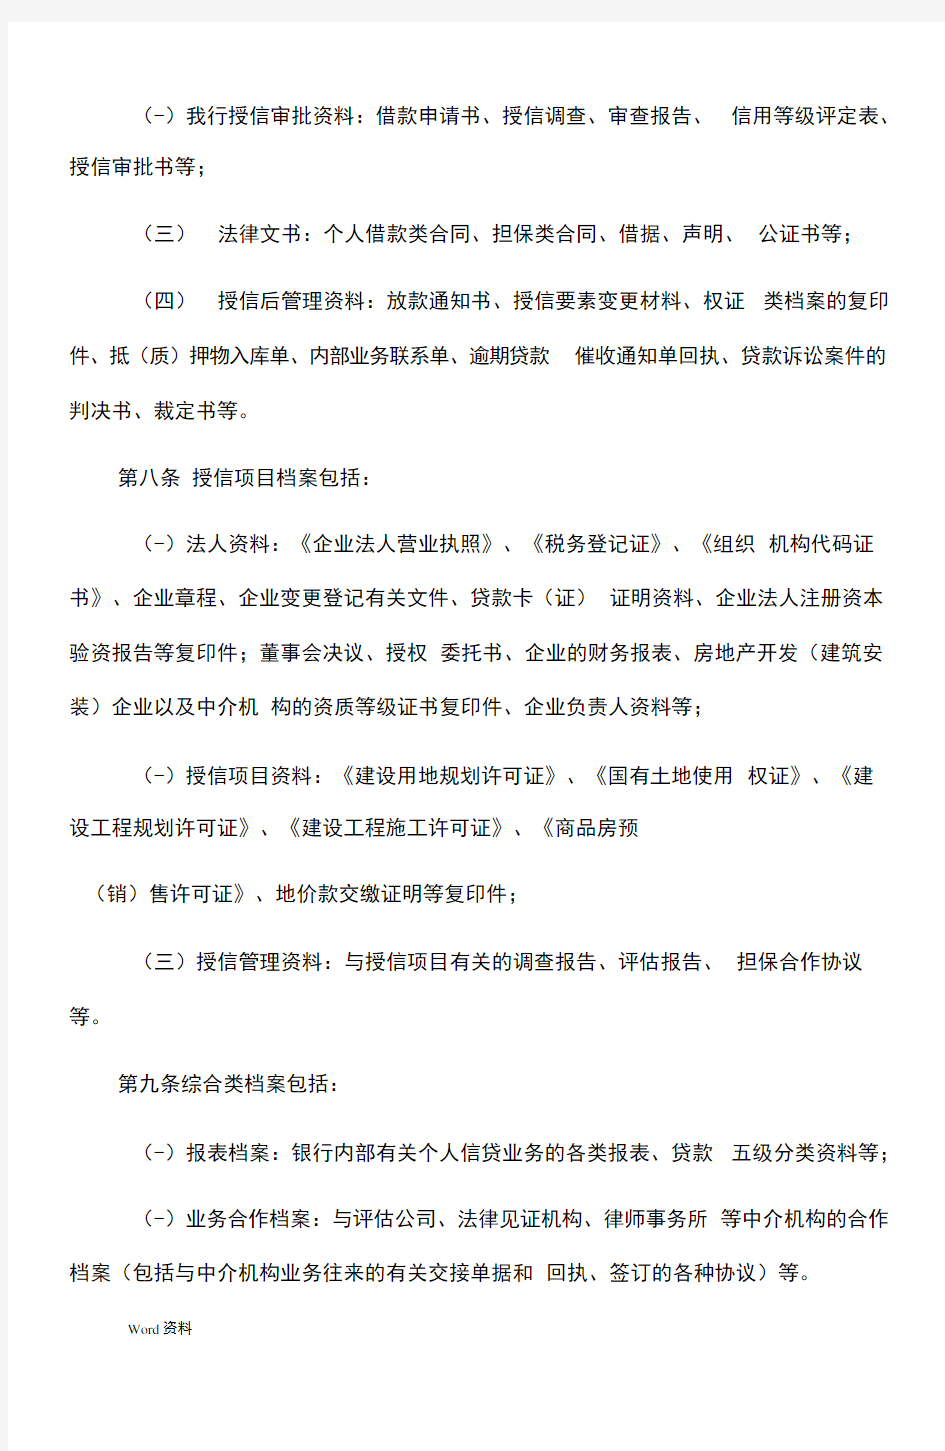 中国民生银行个人信贷业务档案管理办法